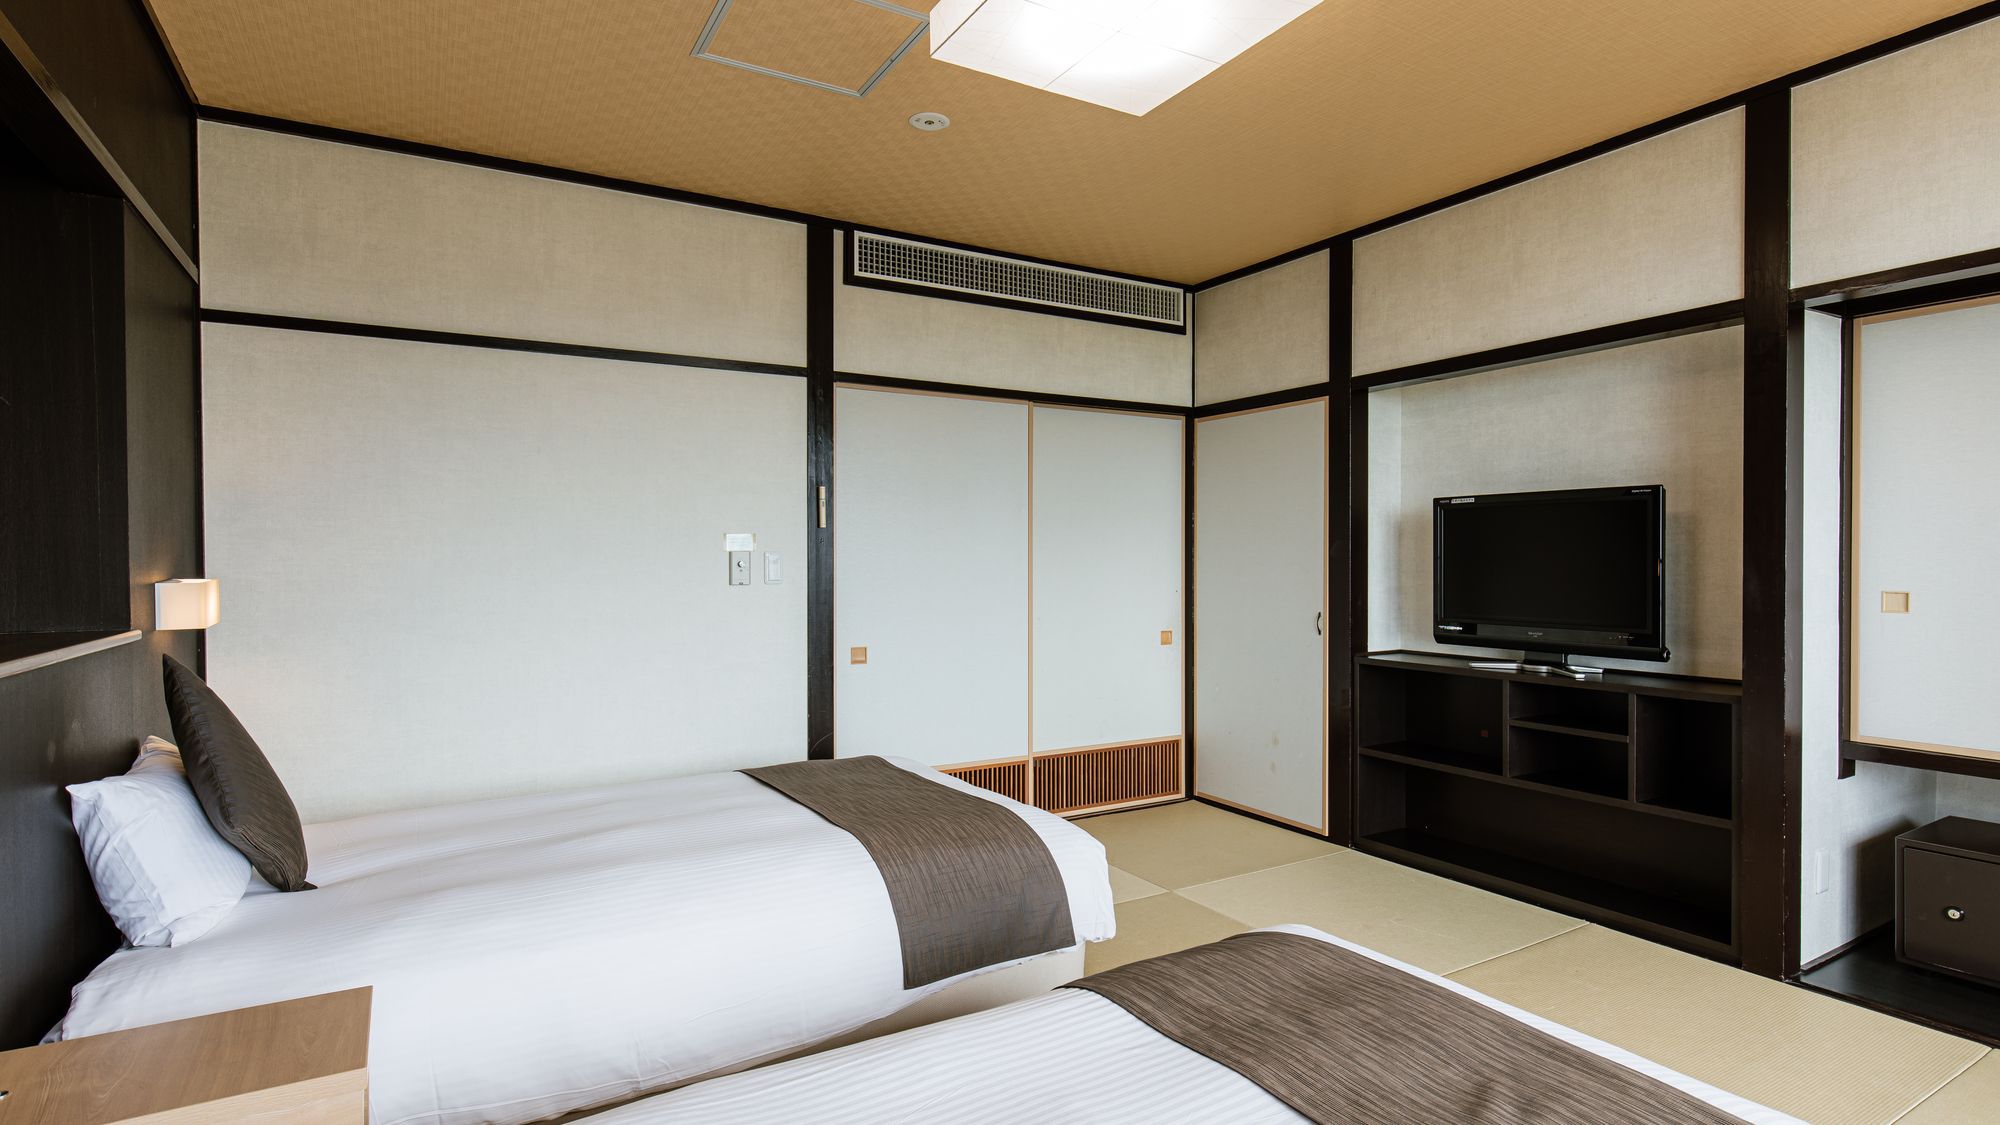 和室ツイン【33平米】琉球調の畳の上にセミダブルベッド2台を備えたモダンなお部屋。